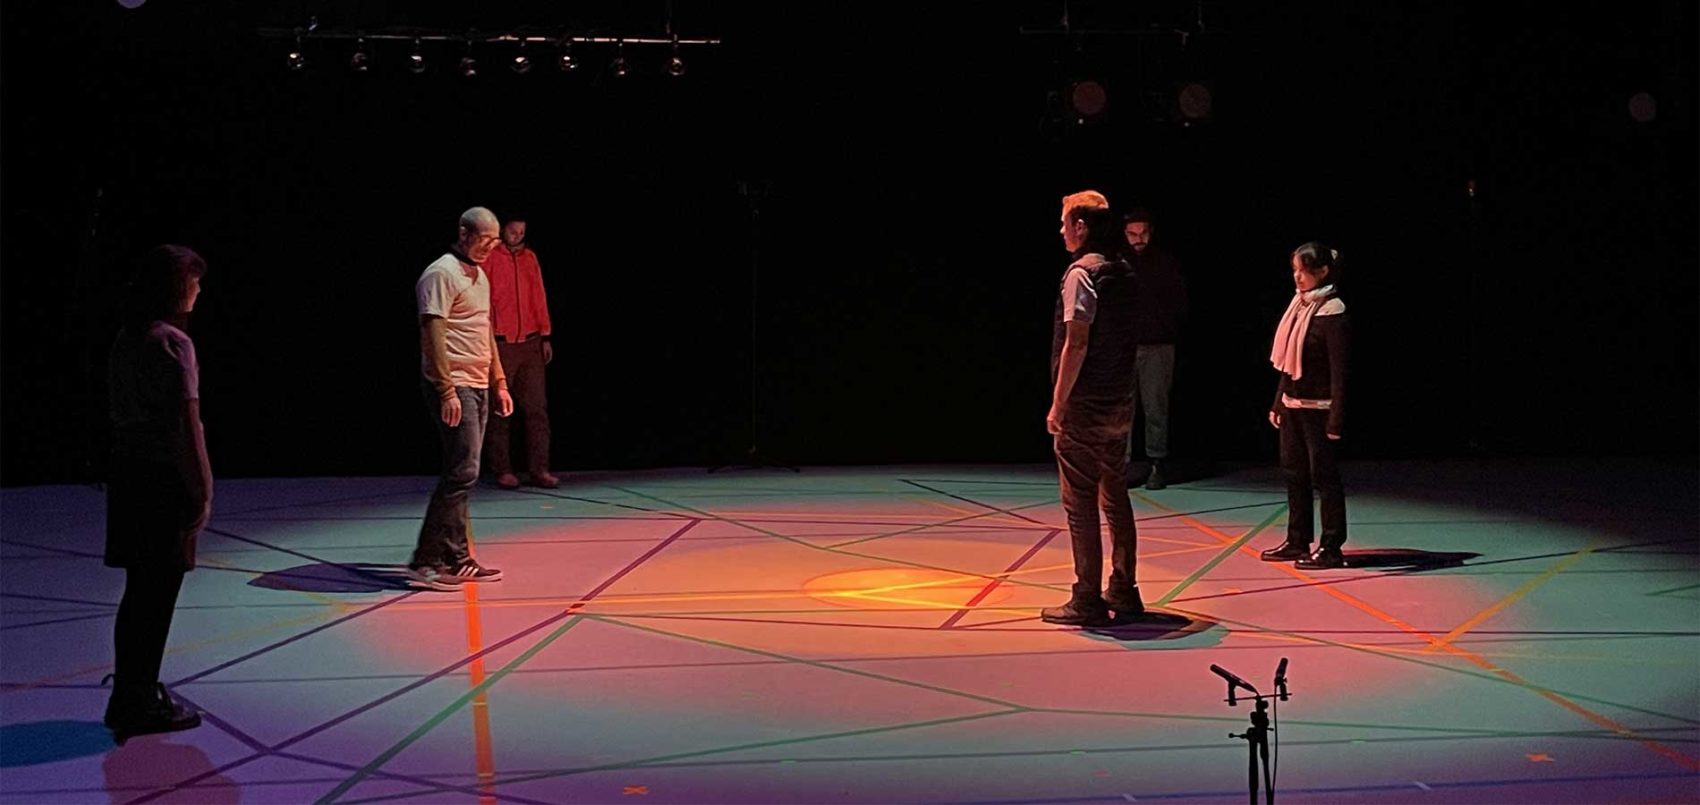 Six personnes sont sur la scène qui est illuminée de plusieurs couleurs. Il y a des grands traits de couleurs au sol